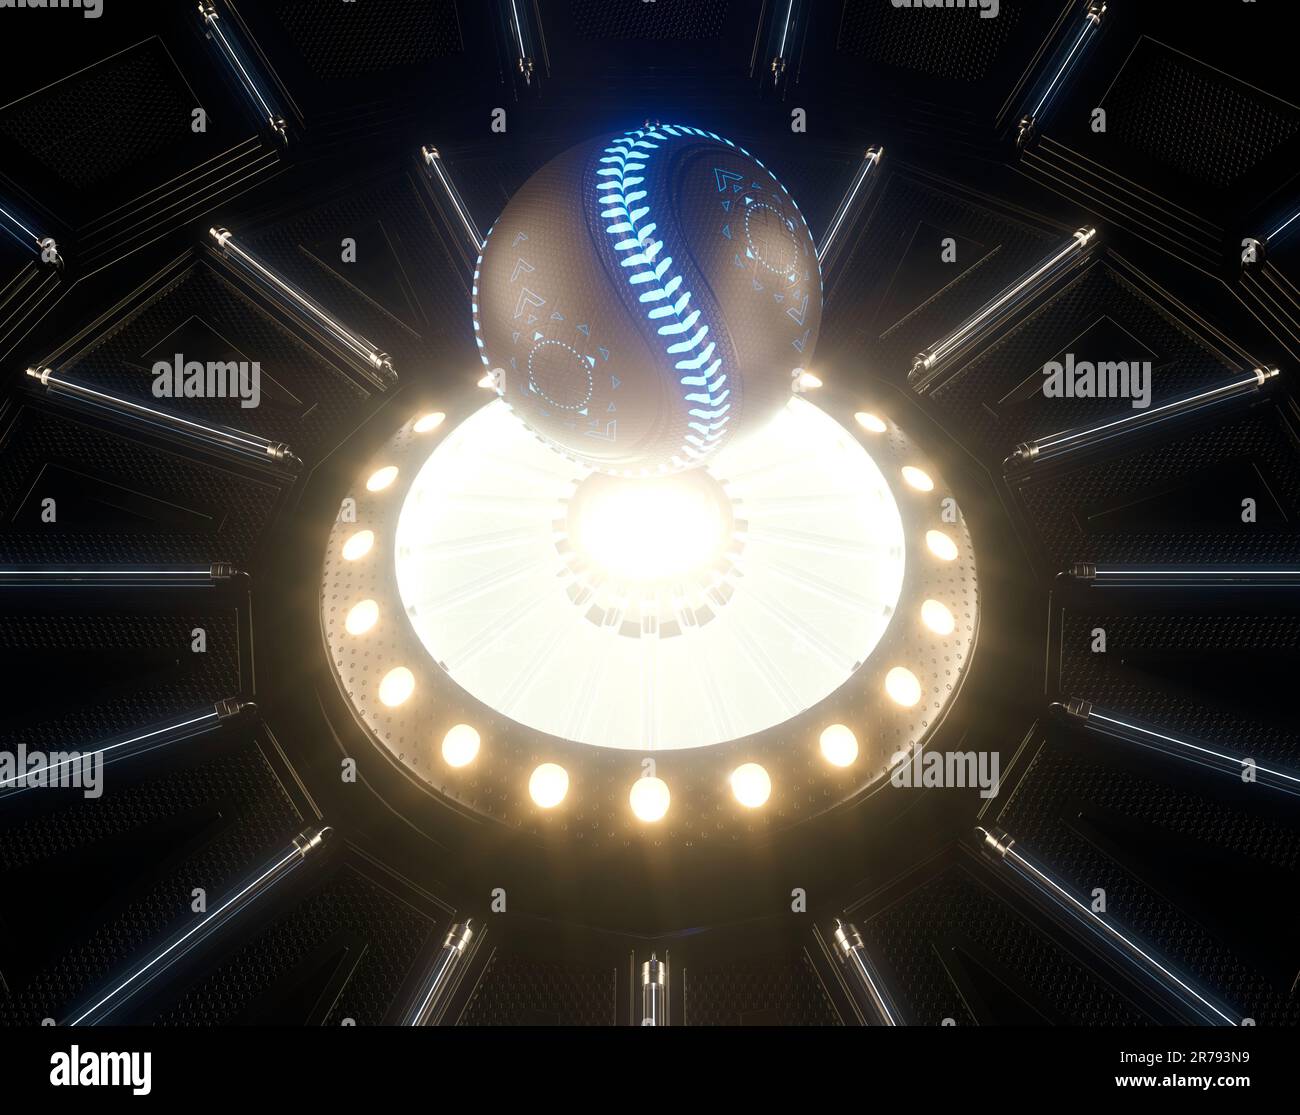 Un concetto sportivo futuristico di una palla da baseball illuminata con marcature al neon che galleggiano sopra un palcoscenico futuristico al neon - render 3D Foto Stock